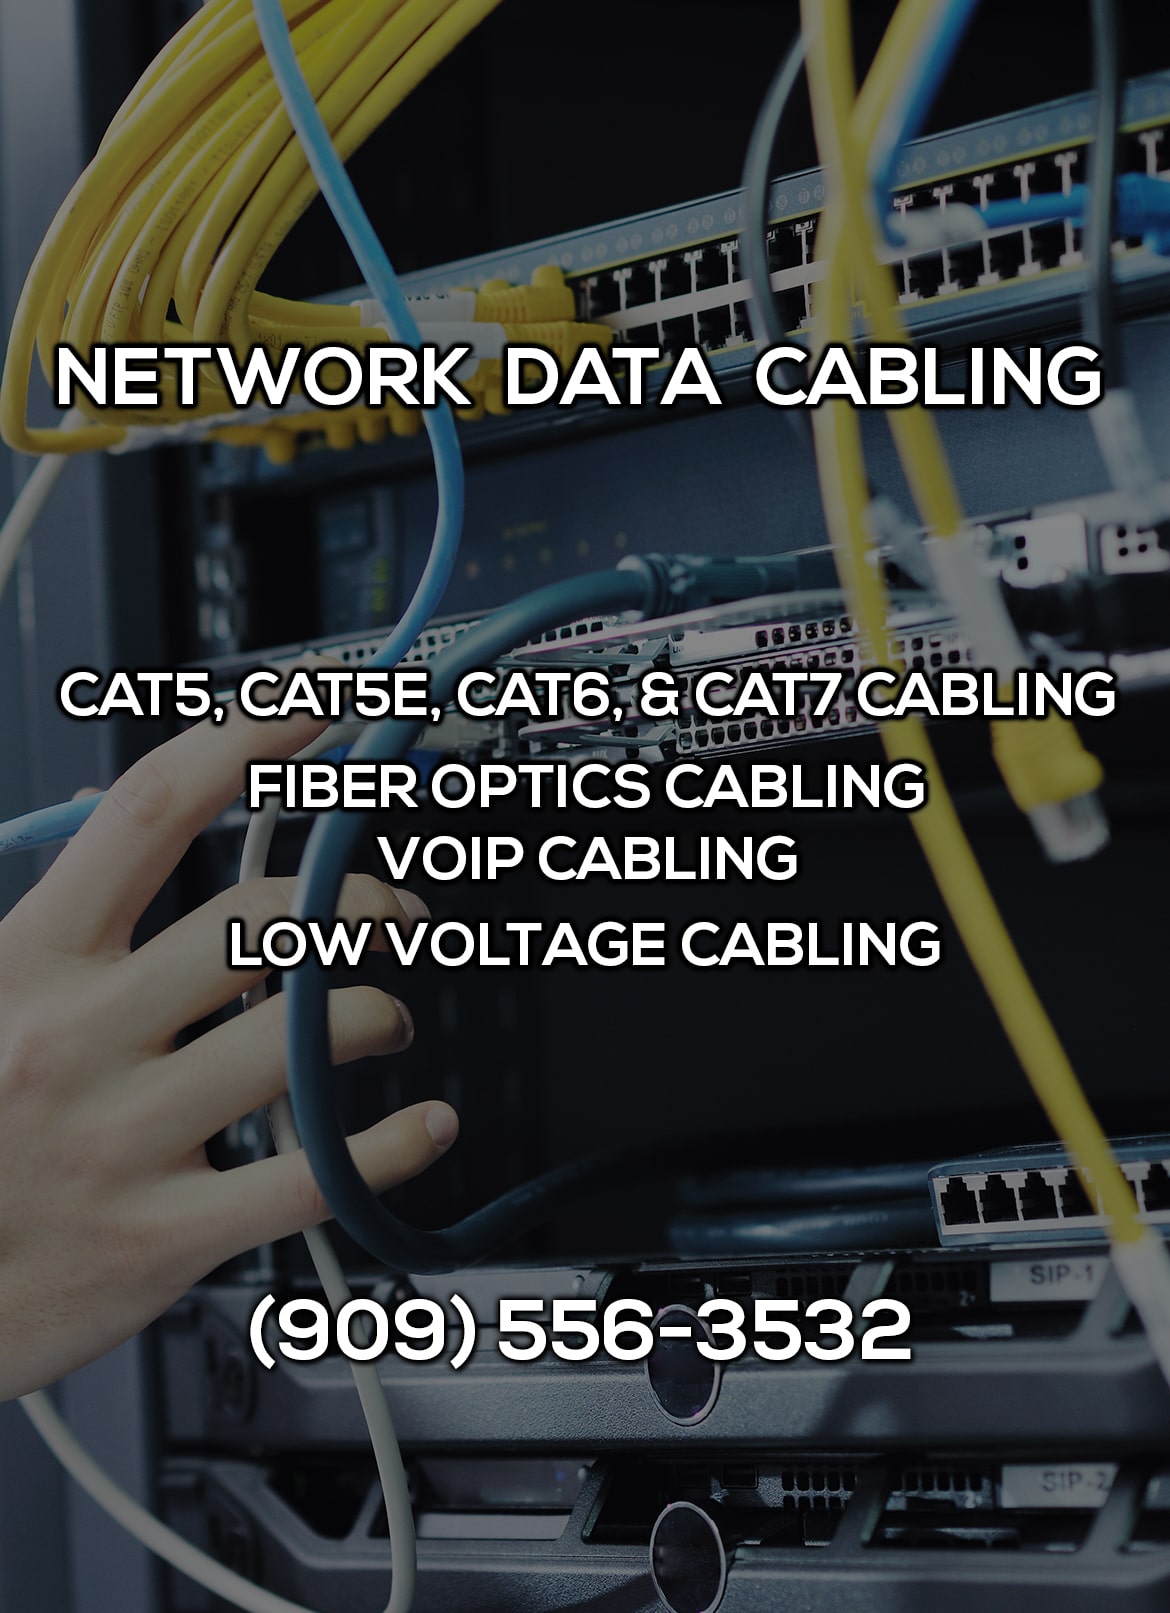 Network Data Cabling in Temecula CA